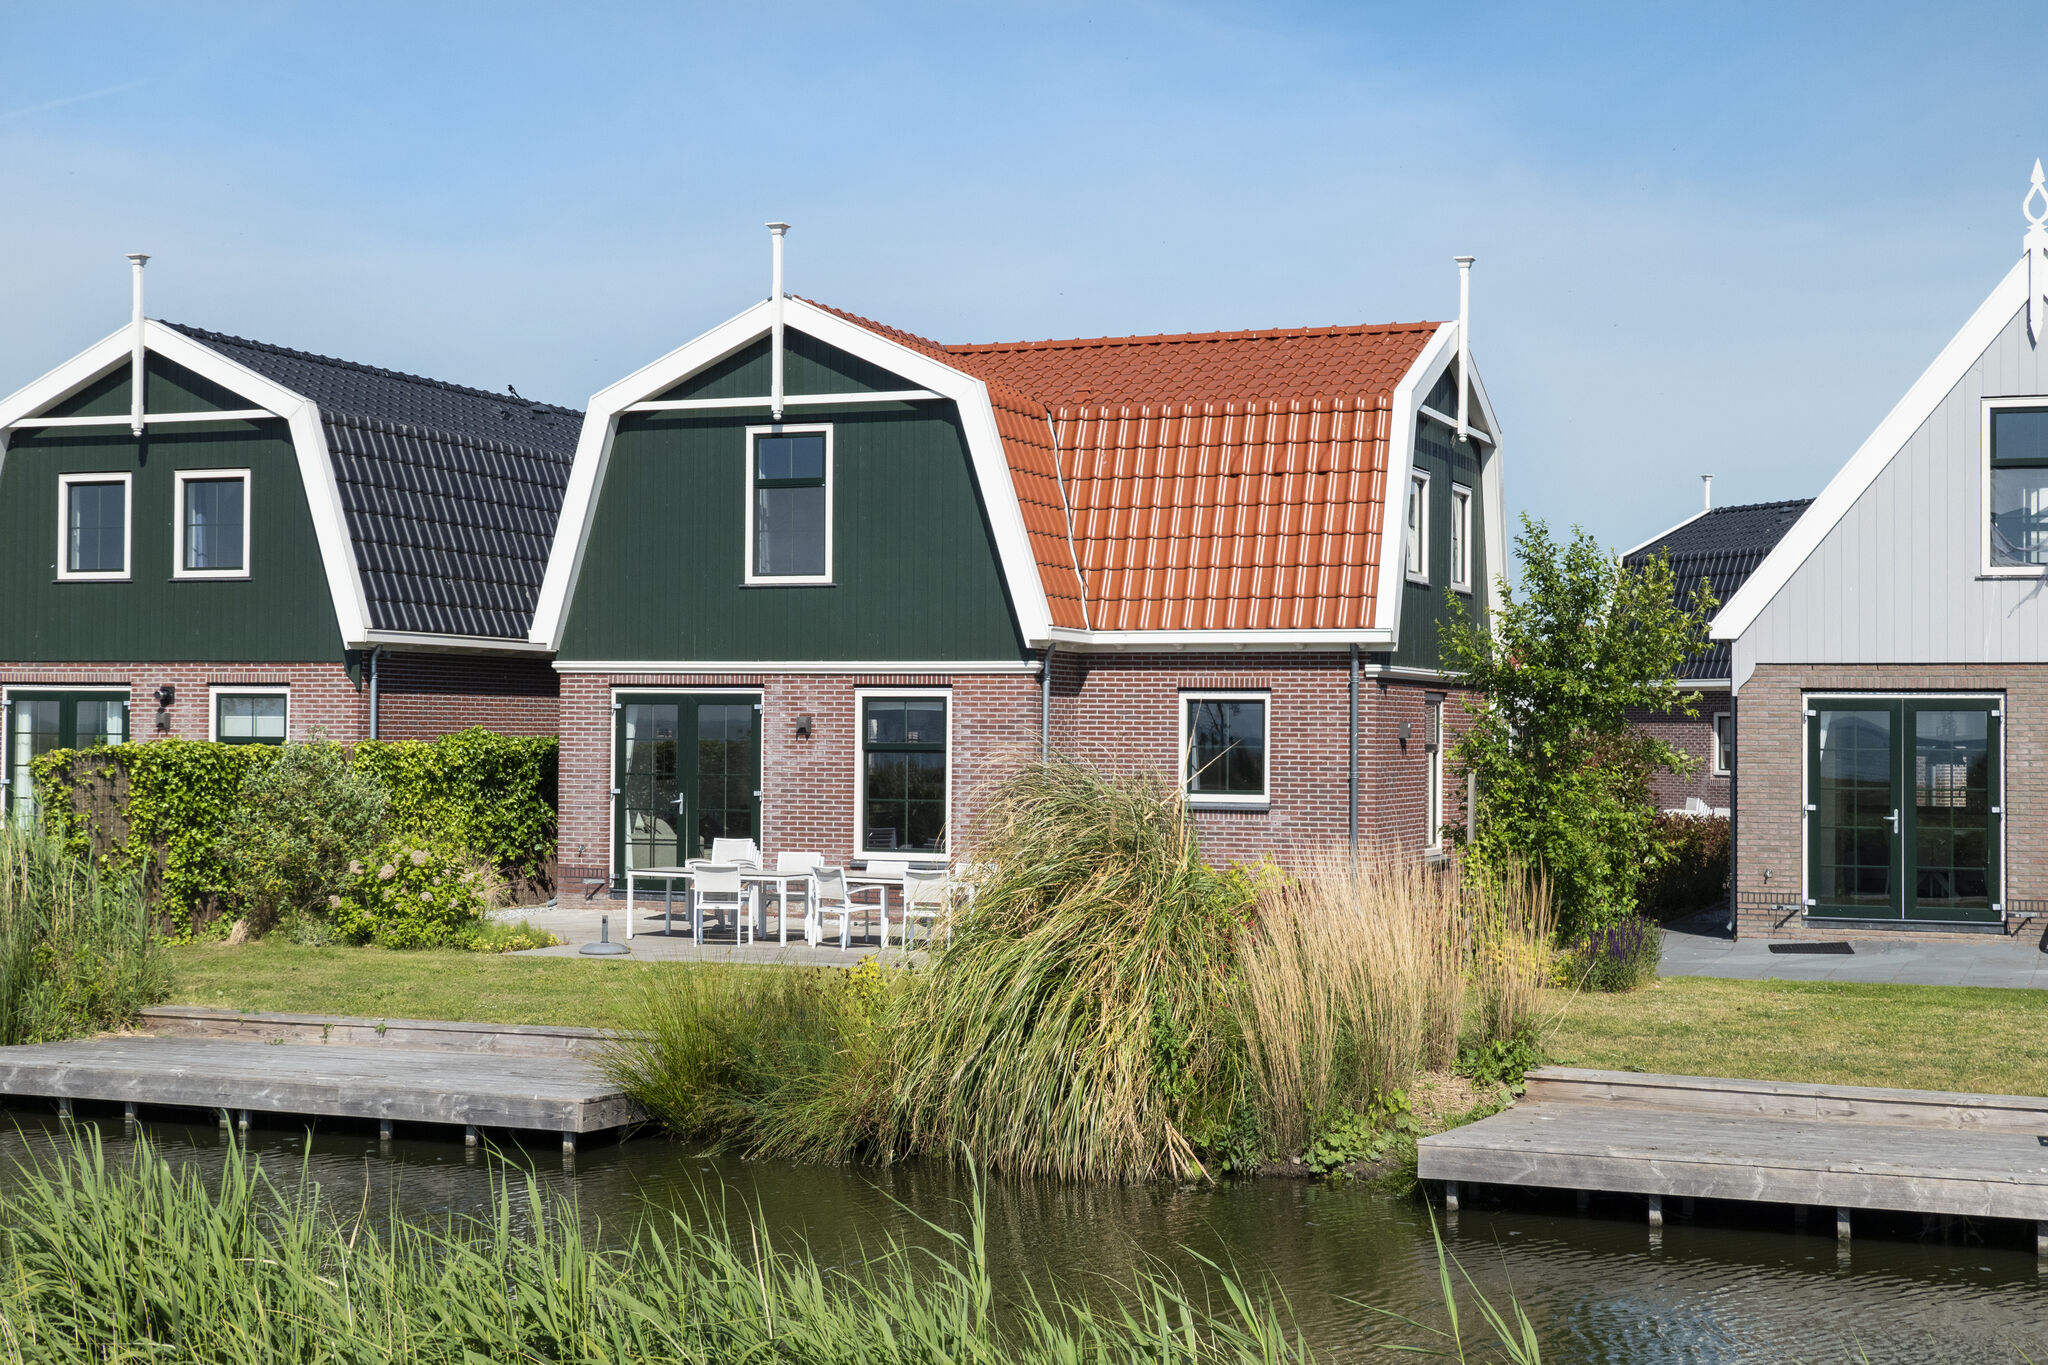 Ferienhaus mit Sauna in der Nähe von Amsterdam